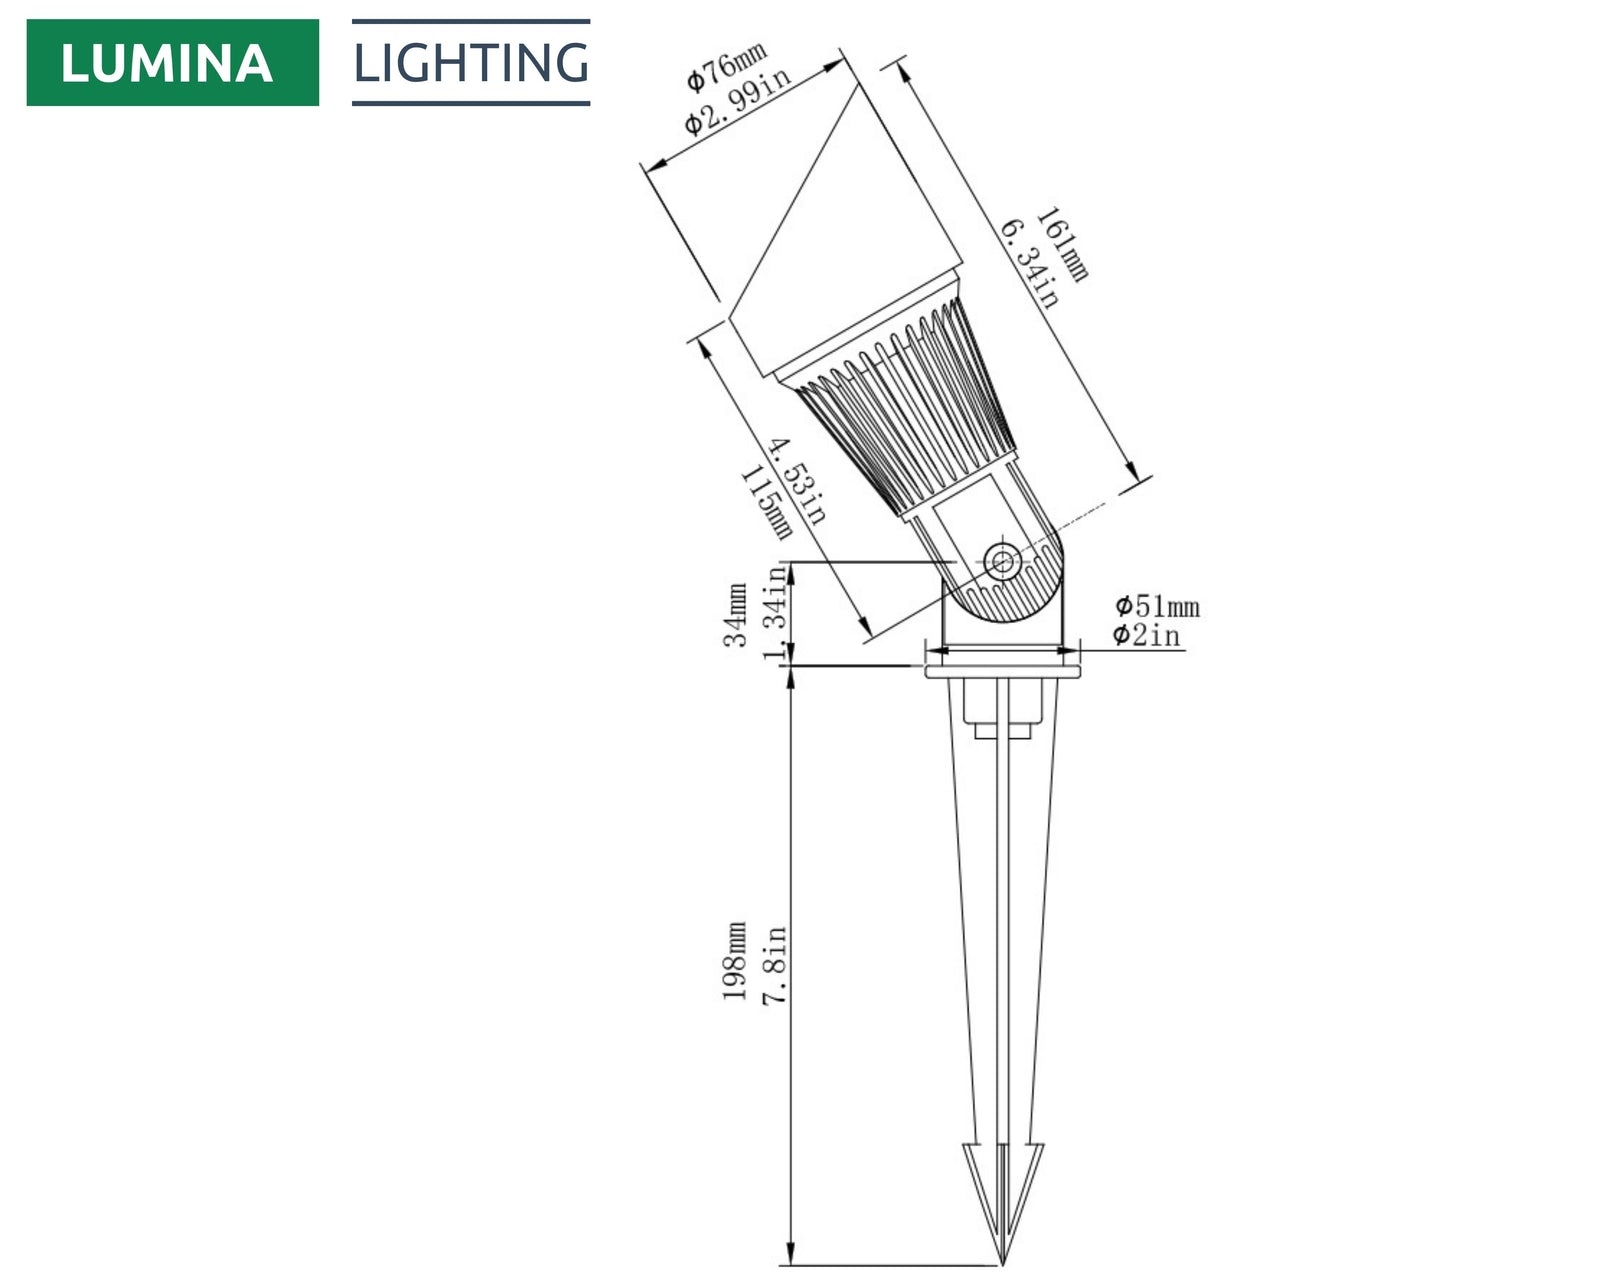 Lumina Lighting® 4W Landscape Spotlights | Low Voltage Landscape Lighting Lights - 12V 3000K | Replaceable MR16 LED Bulb (Bronze, 6-Pack)